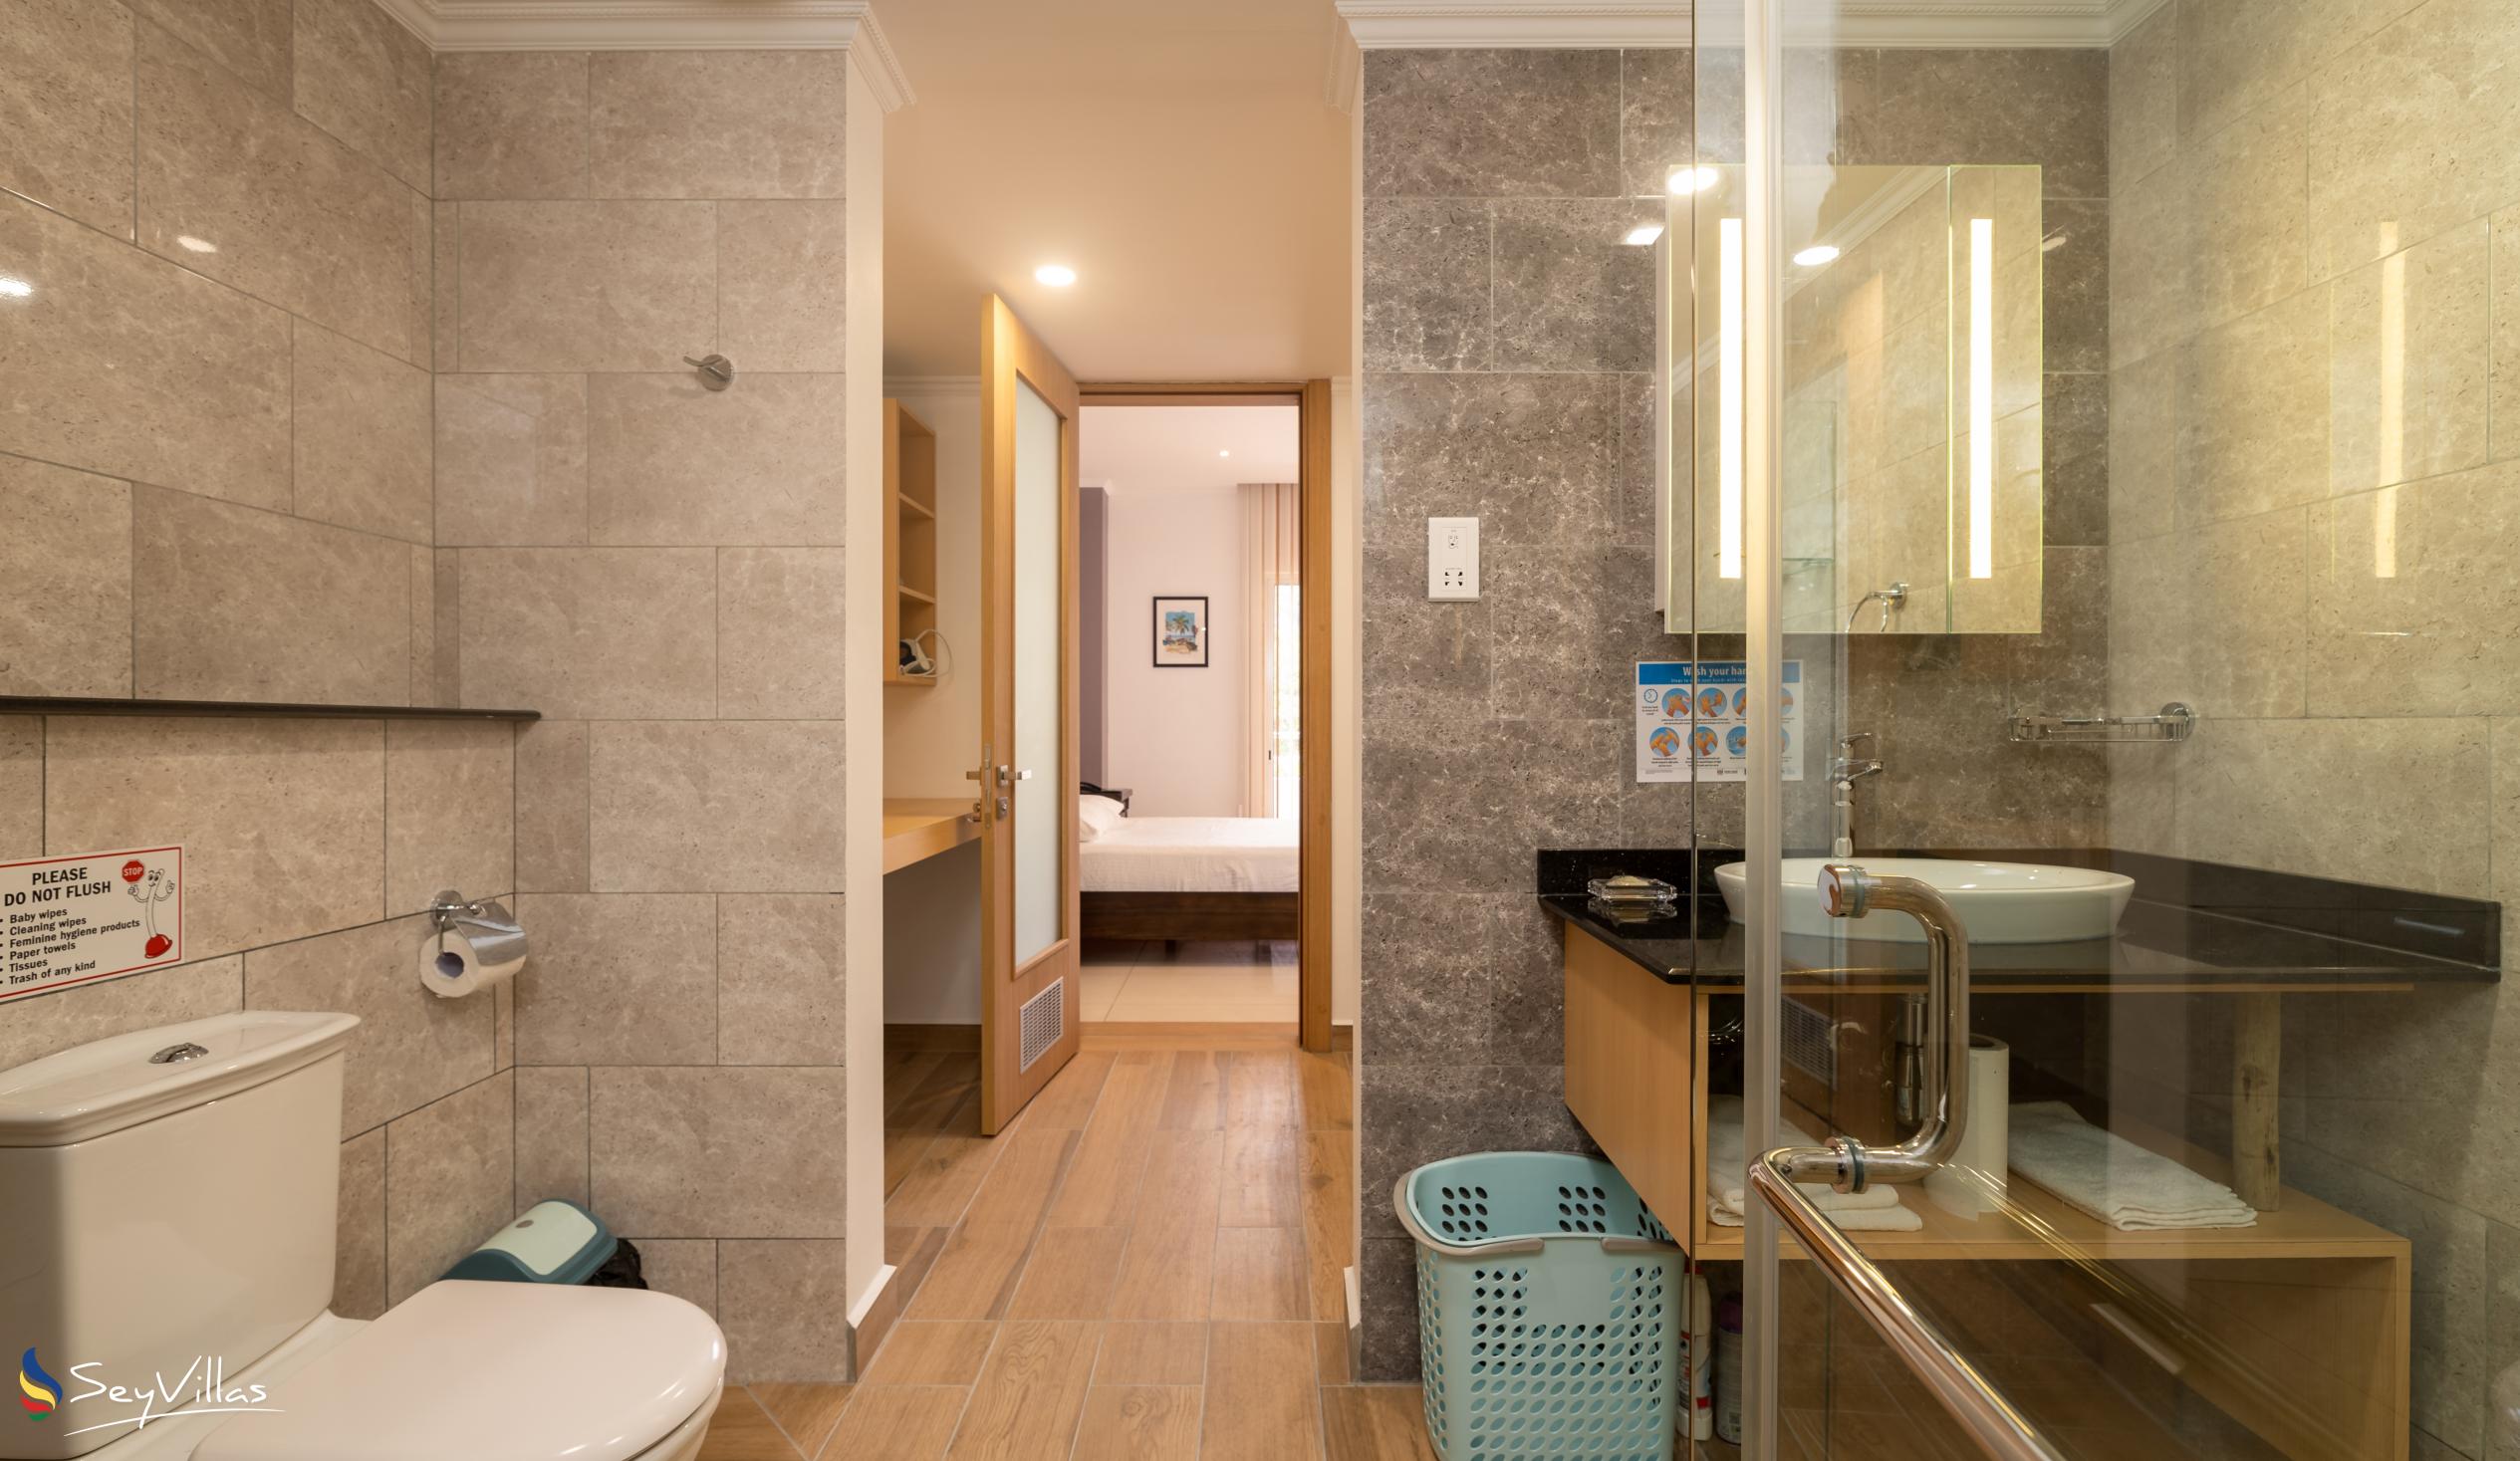 Foto 54: Royale Suites by Arc Royale Luxury Apartments - Appartement 1 chambre - Mahé (Seychelles)